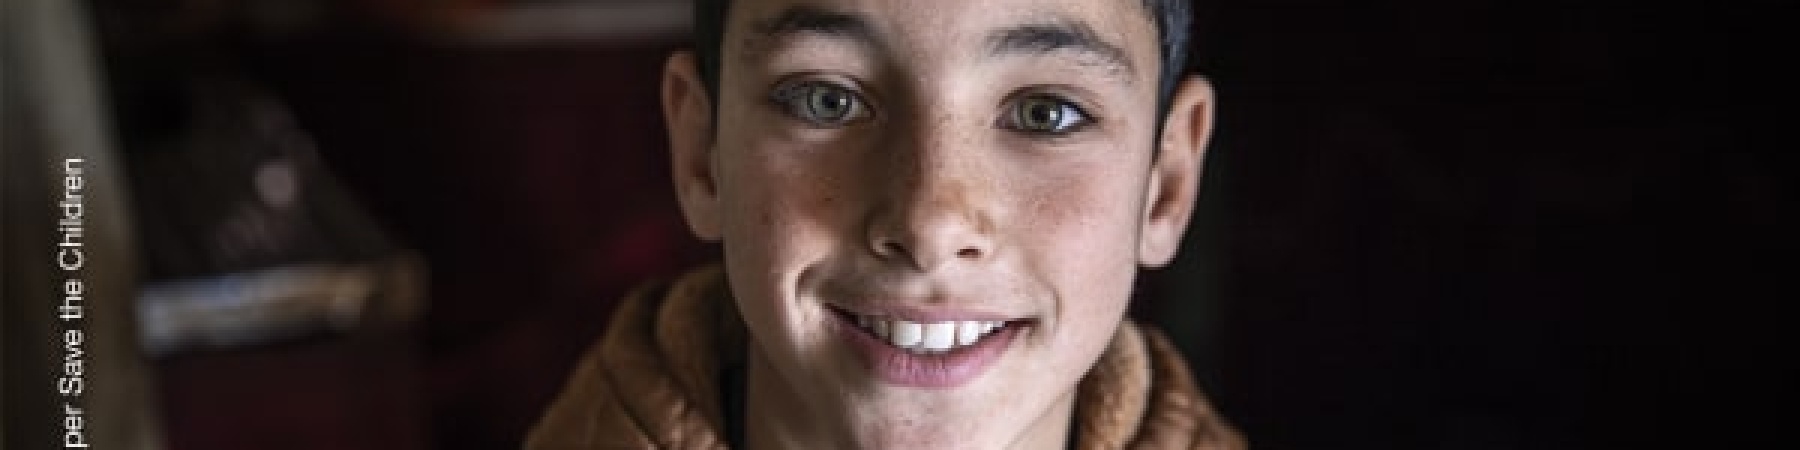 ritratto di bambino sorridente come copertina del bilancio sociale 2022 di save the children 